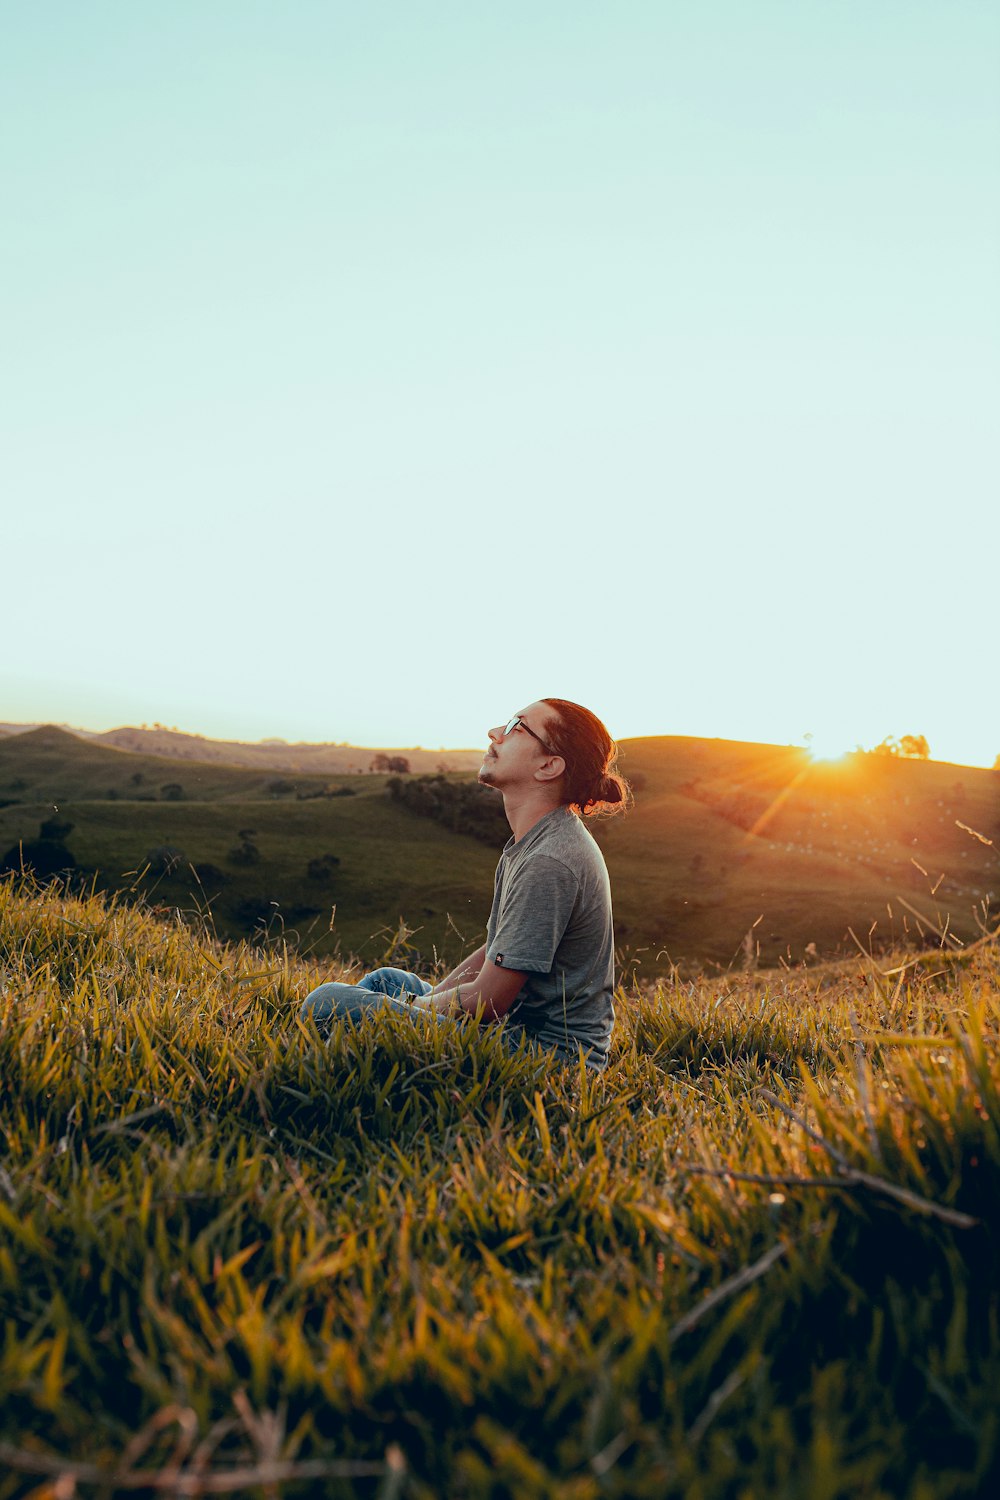 homme en chemise blanche assis sur le champ d’herbe verte pendant le coucher du soleil